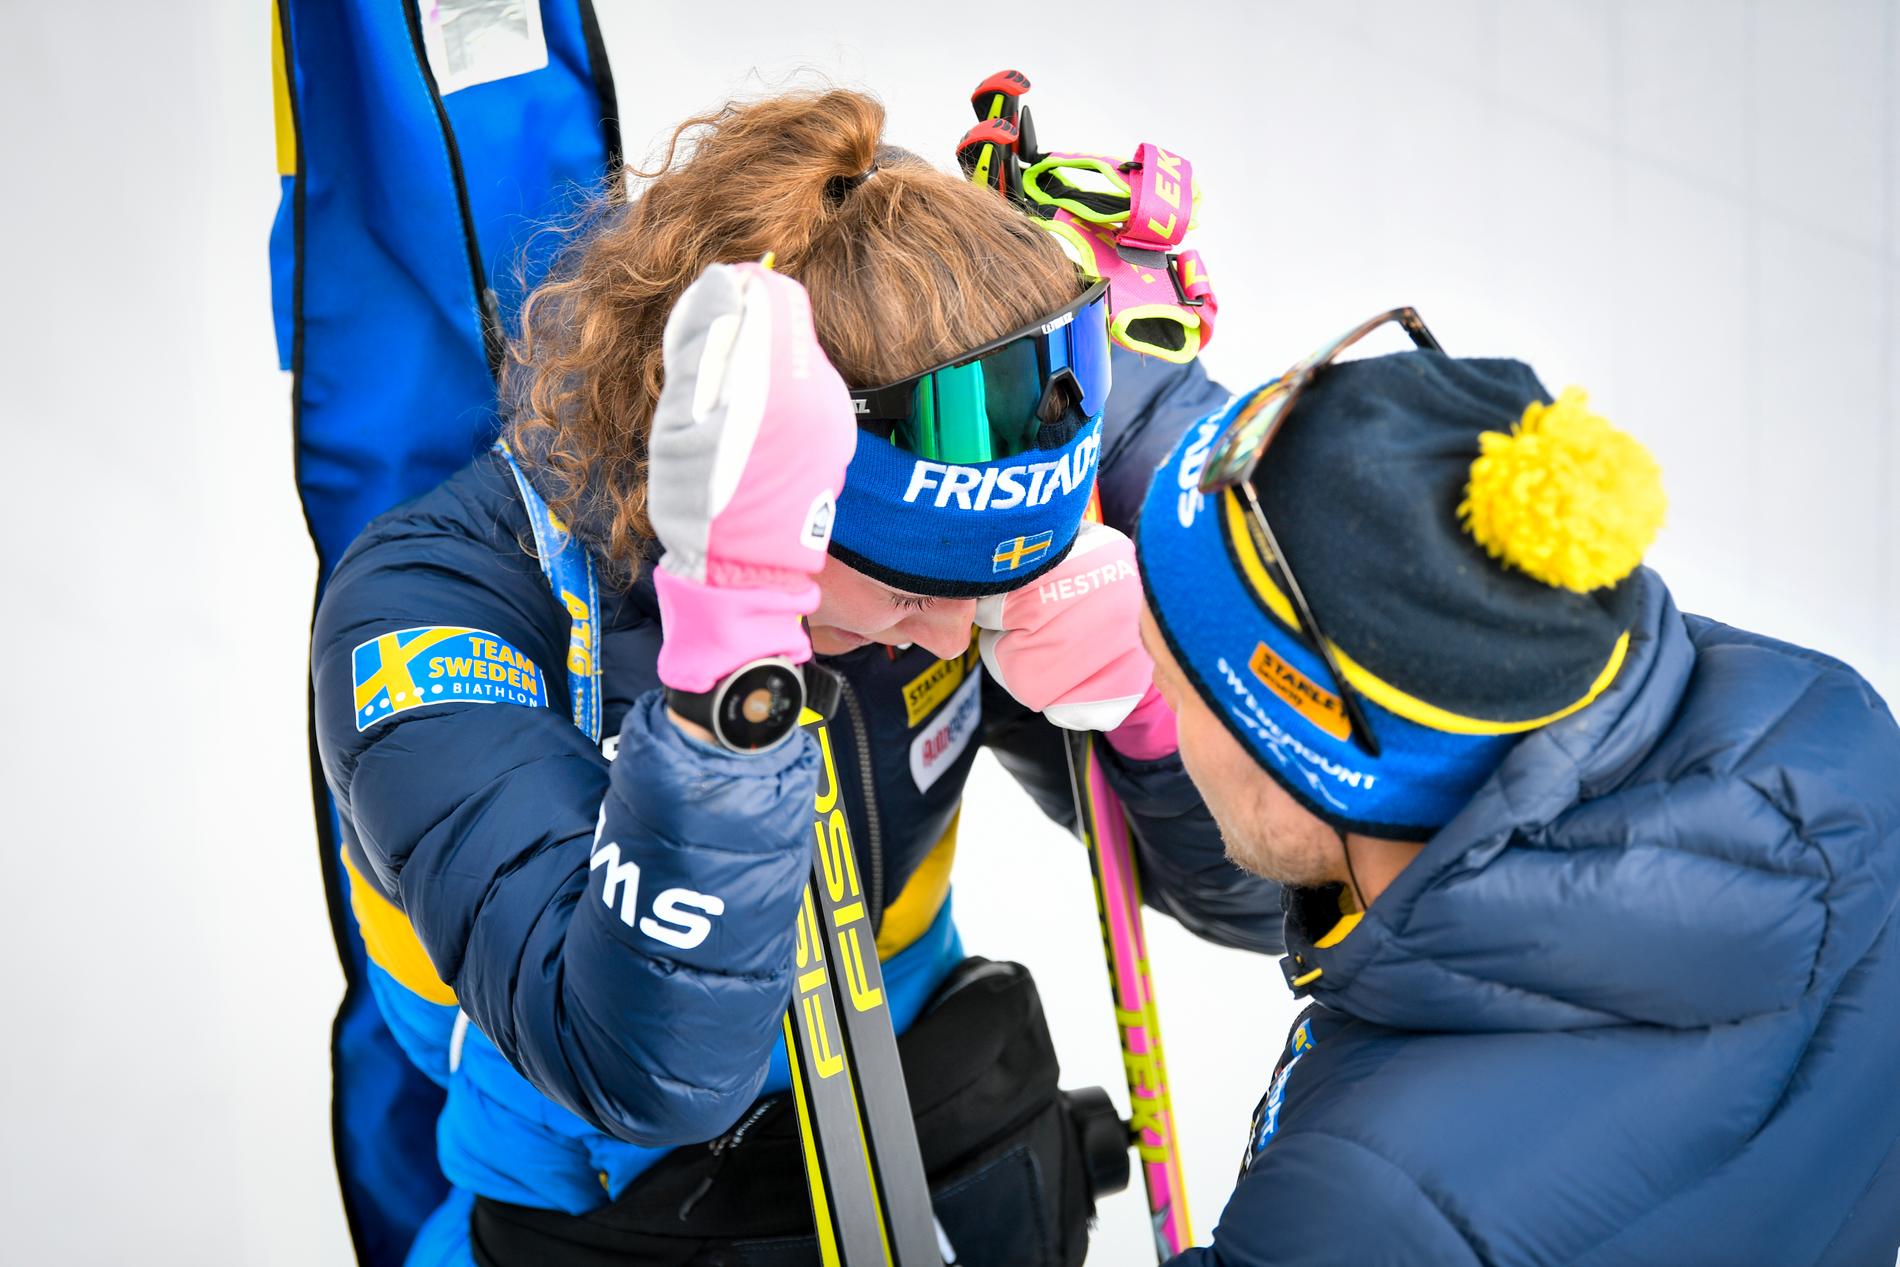 Hanna Öberg tröstas av tränaren Johannes Lukas efter att ha skjutit bort sig i sprinten.